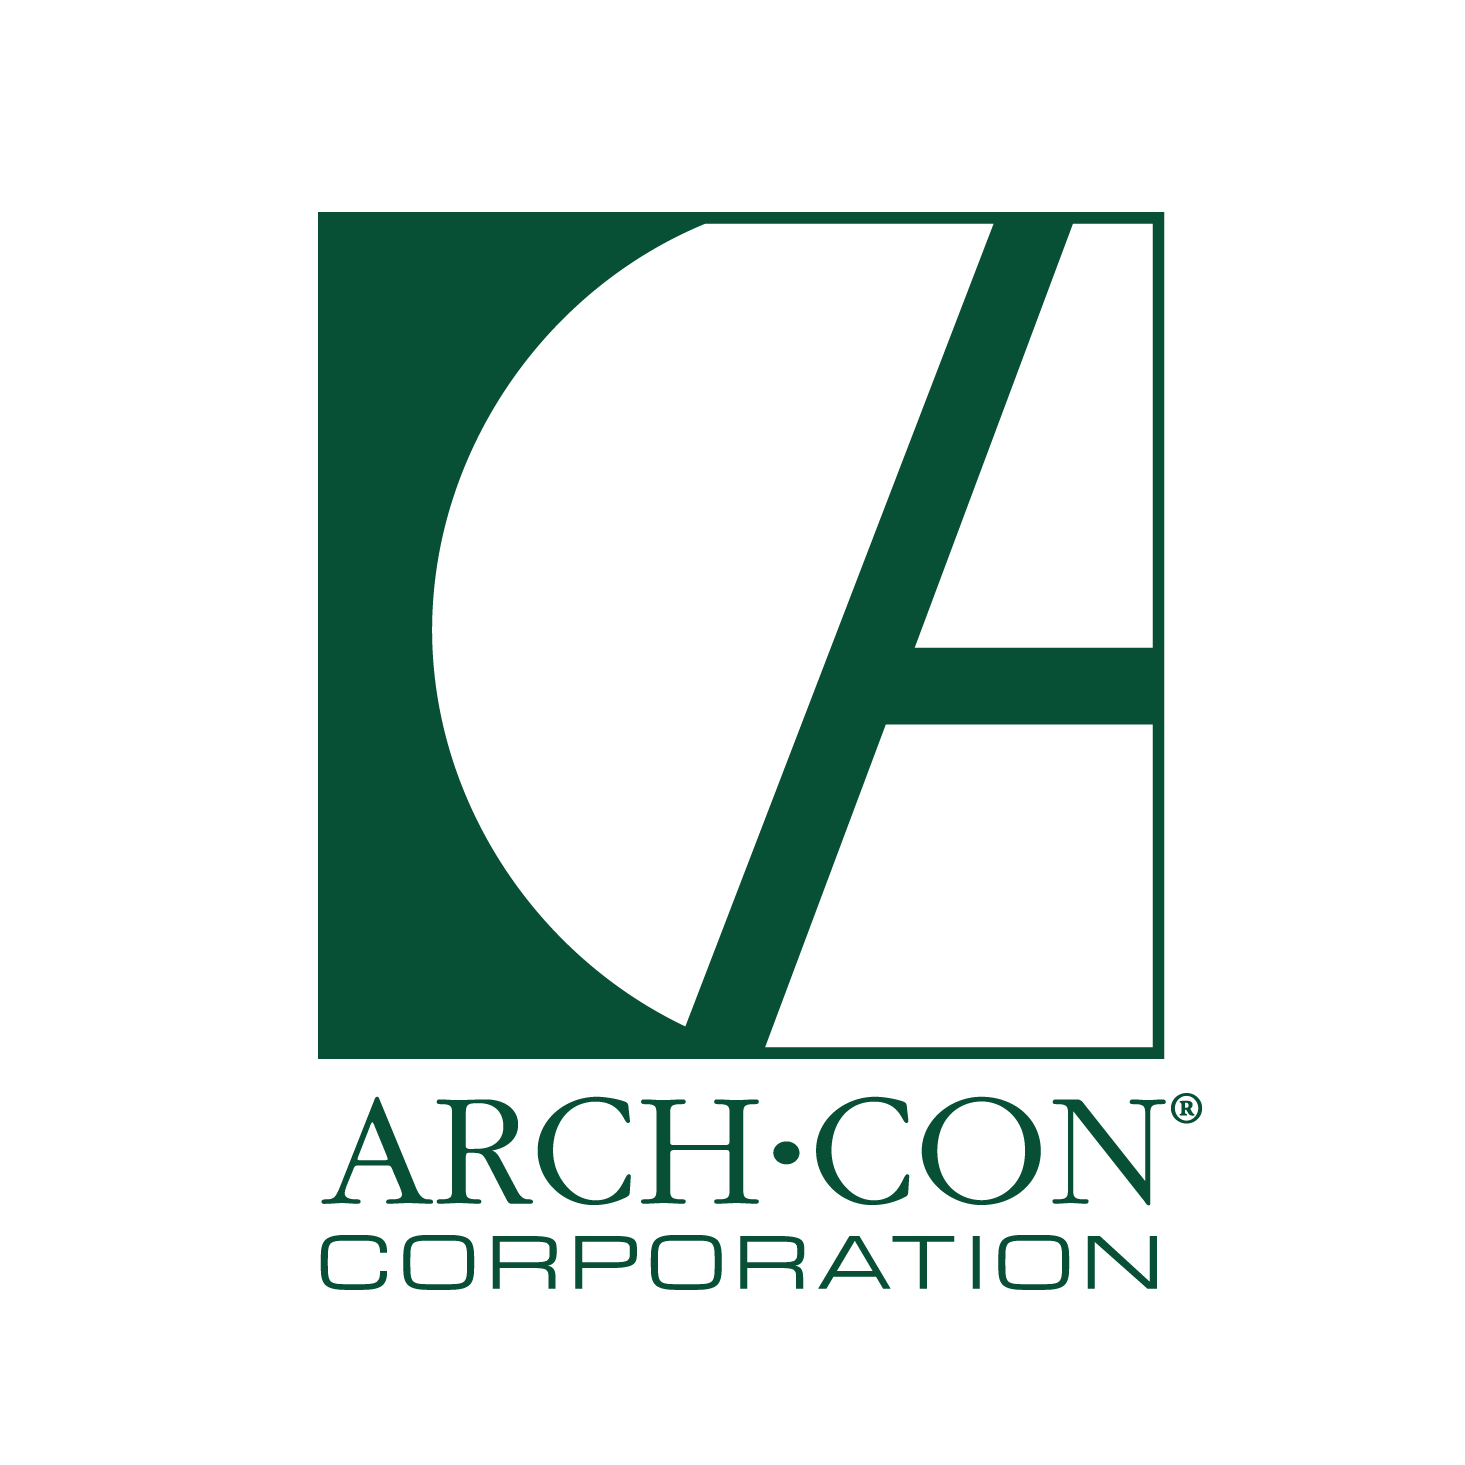 Arch-Con